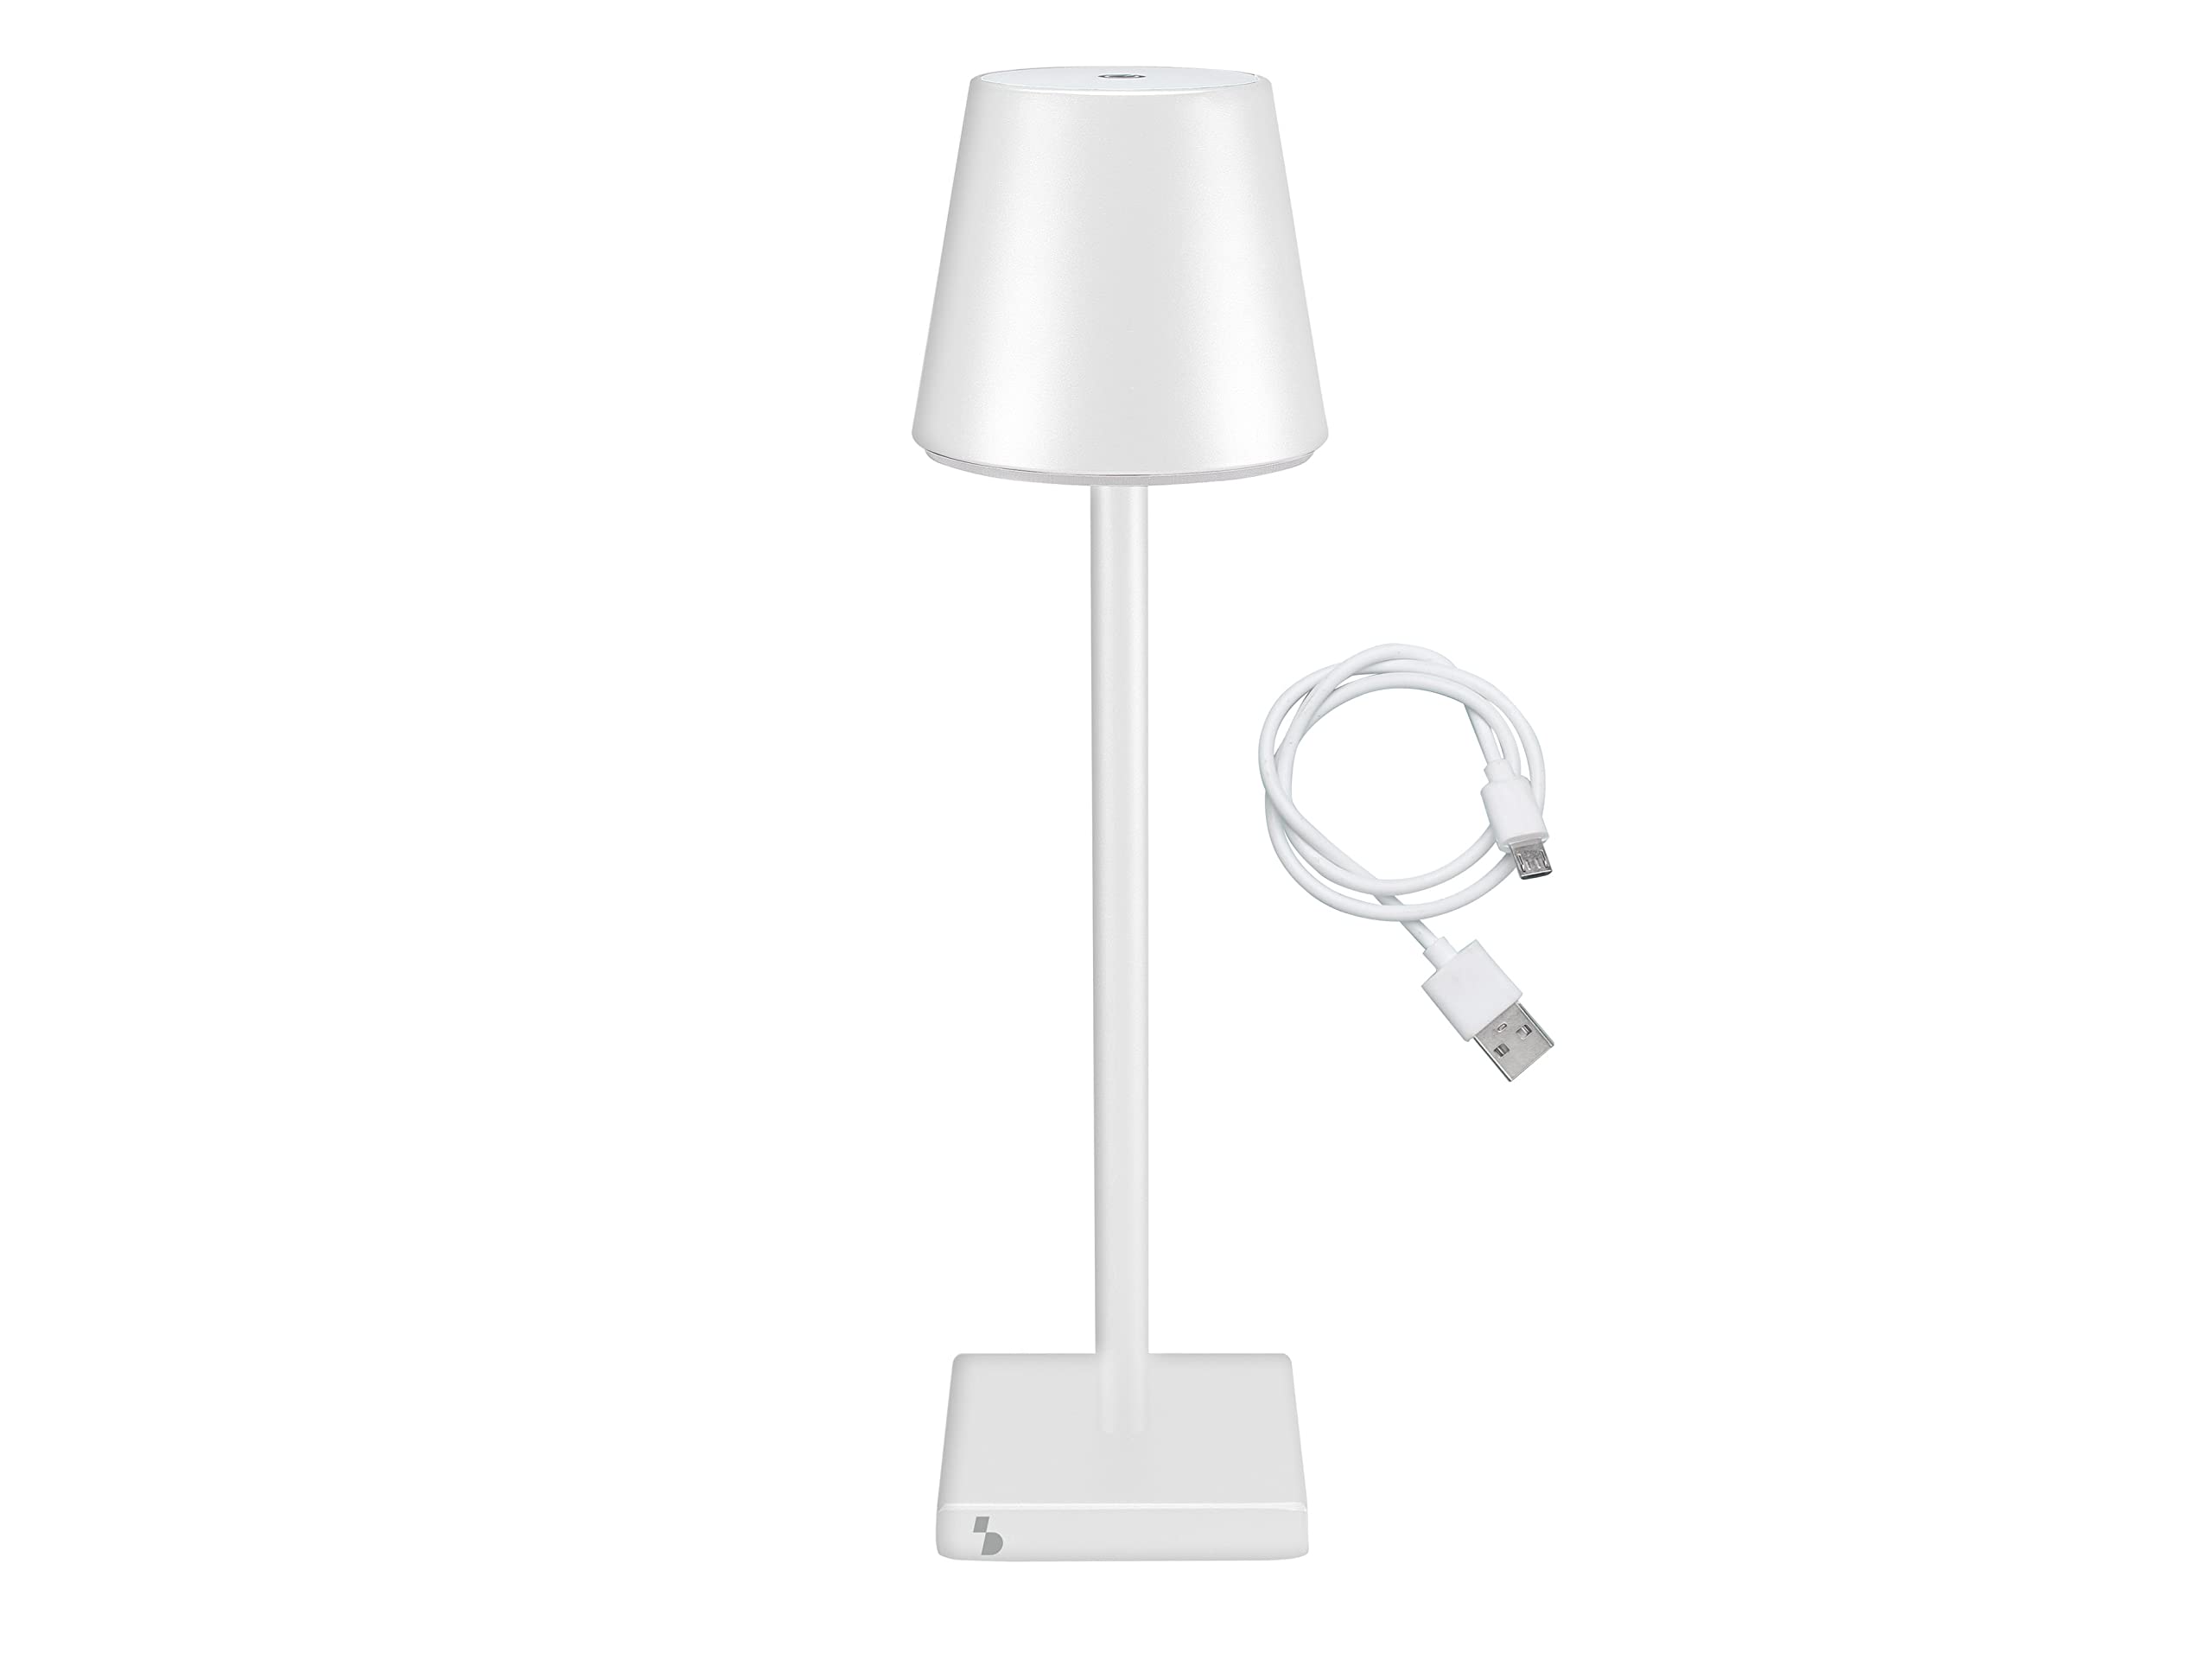 BEPER P201UTP102 Tischlampe Kabellos LED mit Touch - Kabellose Lampe für den Innen und Draußen (Weiß)